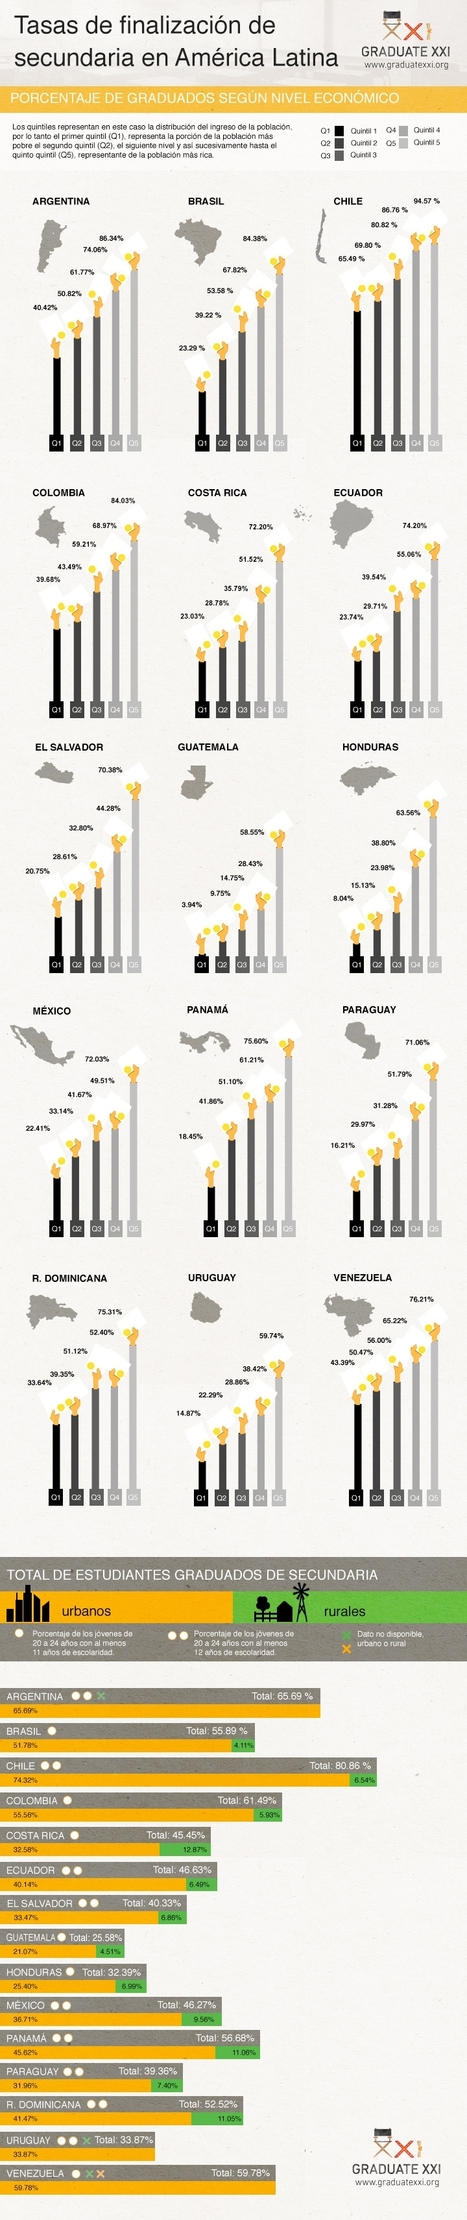 Las brechas de educación entre los países de América Latina | Las TIC y la Educación | Scoop.it